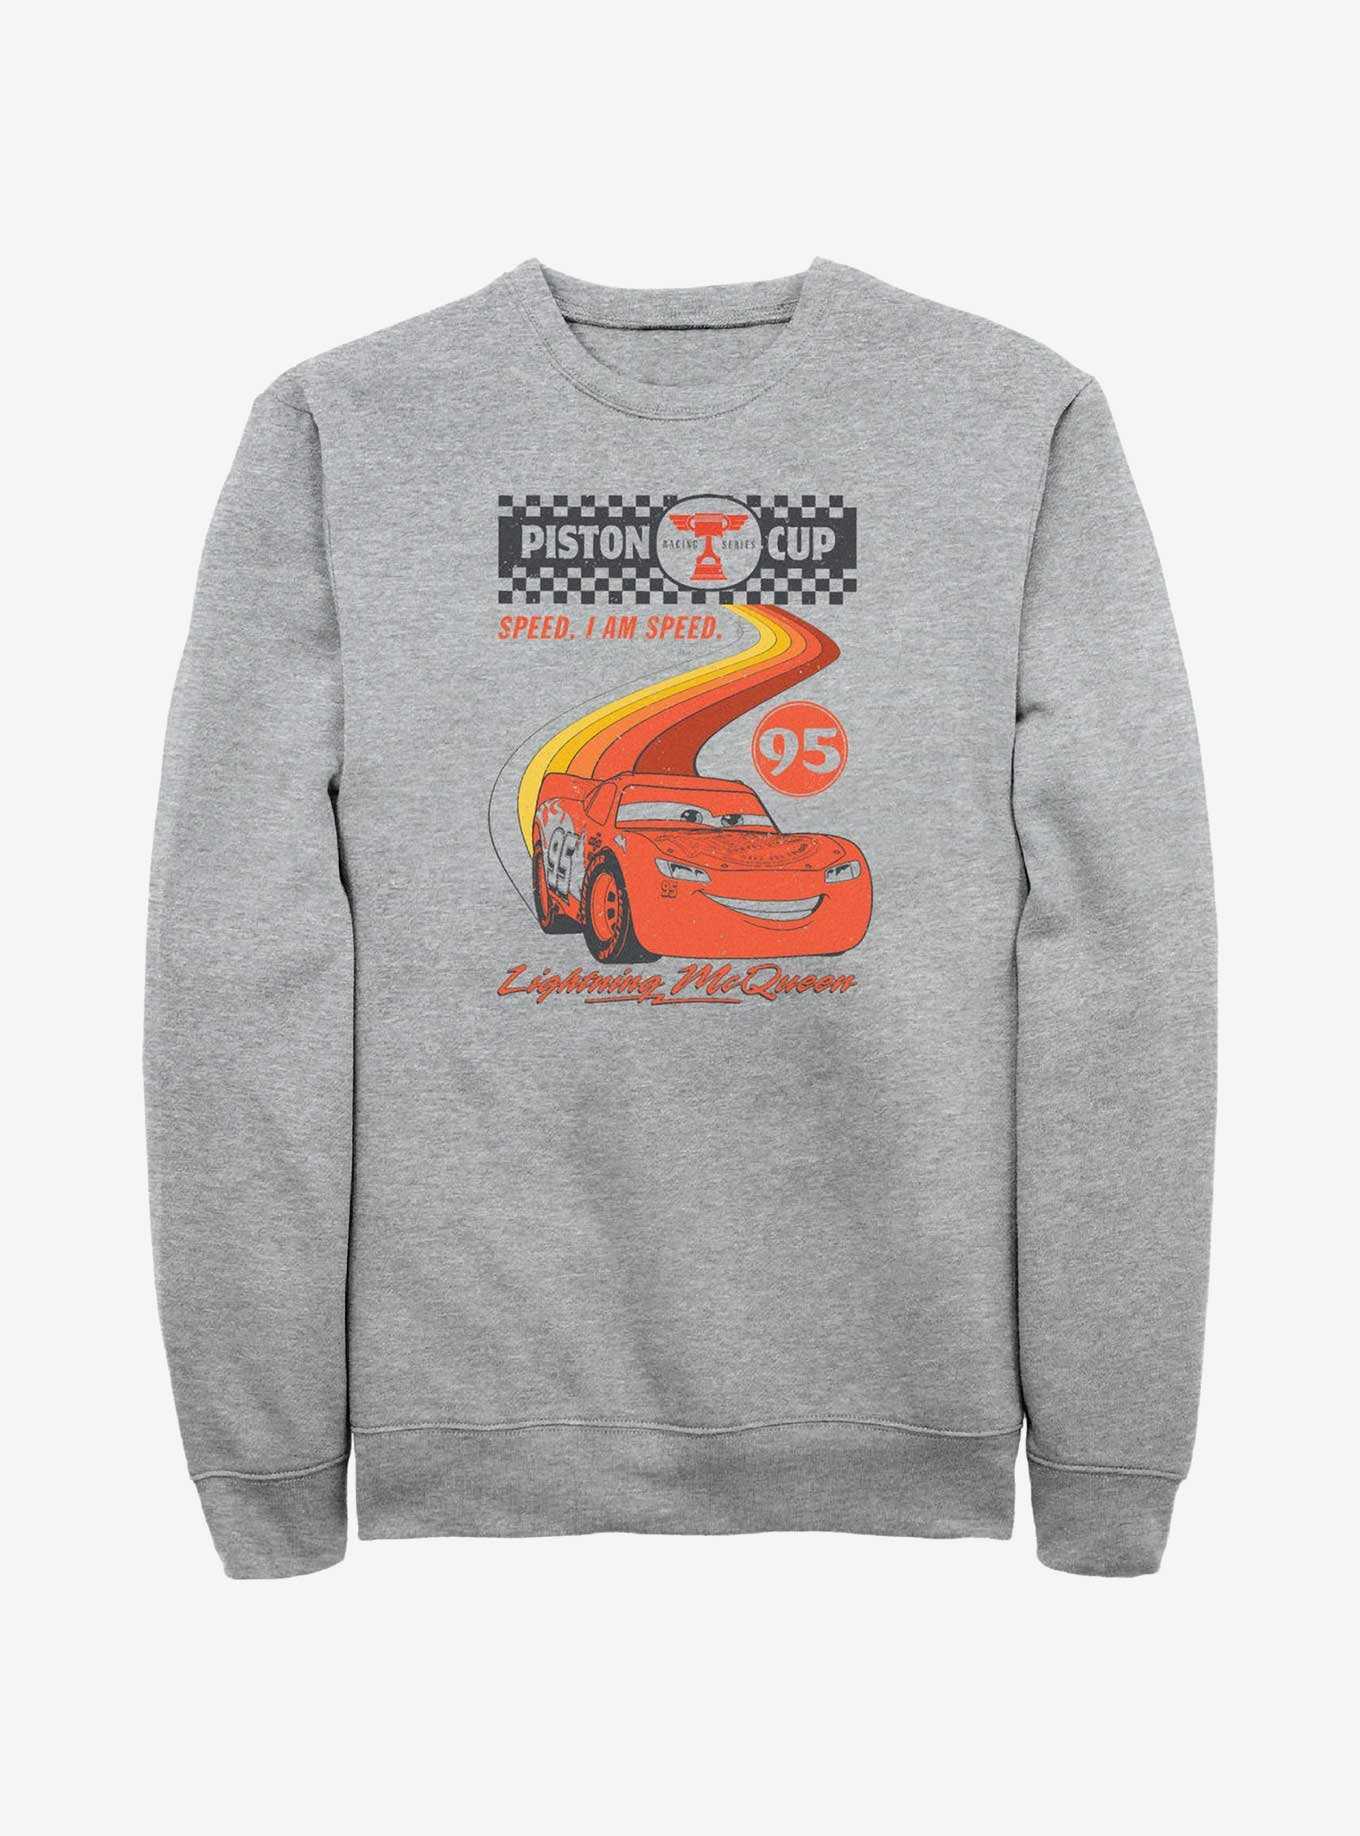 Disney Pixar Cars Retro McQueen Speedway Sweatshirt, , hi-res